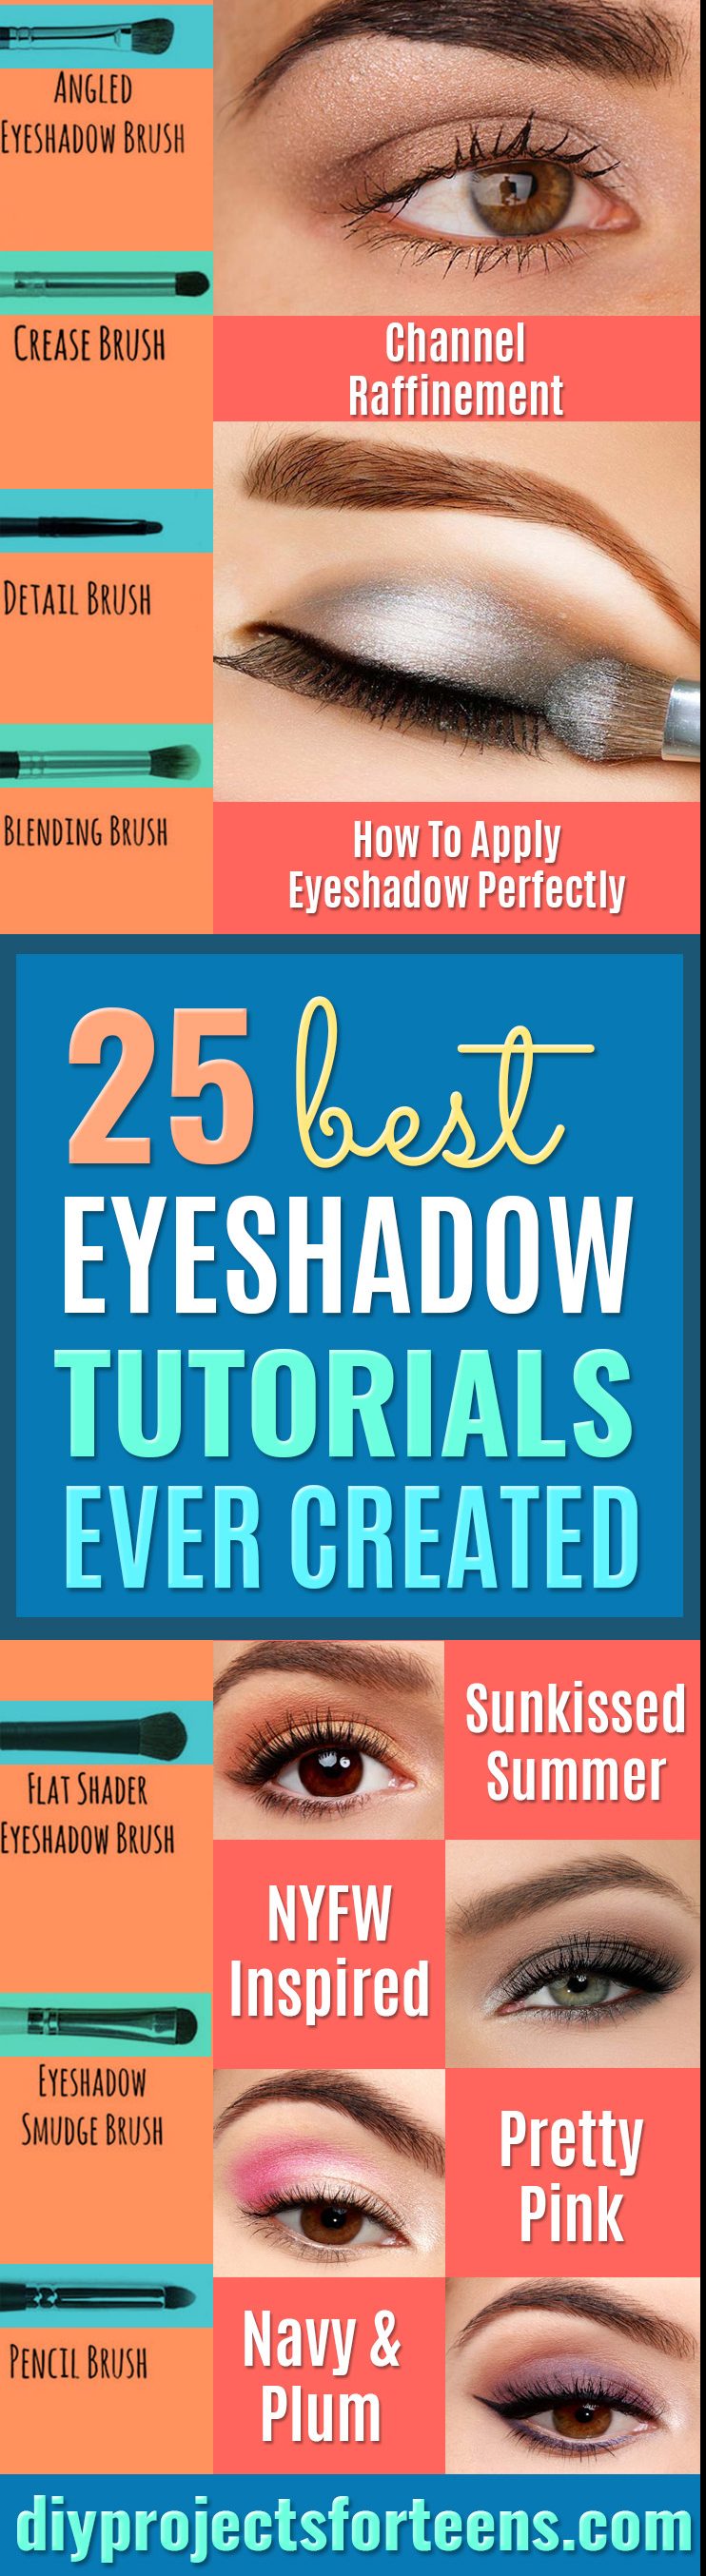 25 Best Eyeshadow Tutorials Ever Created